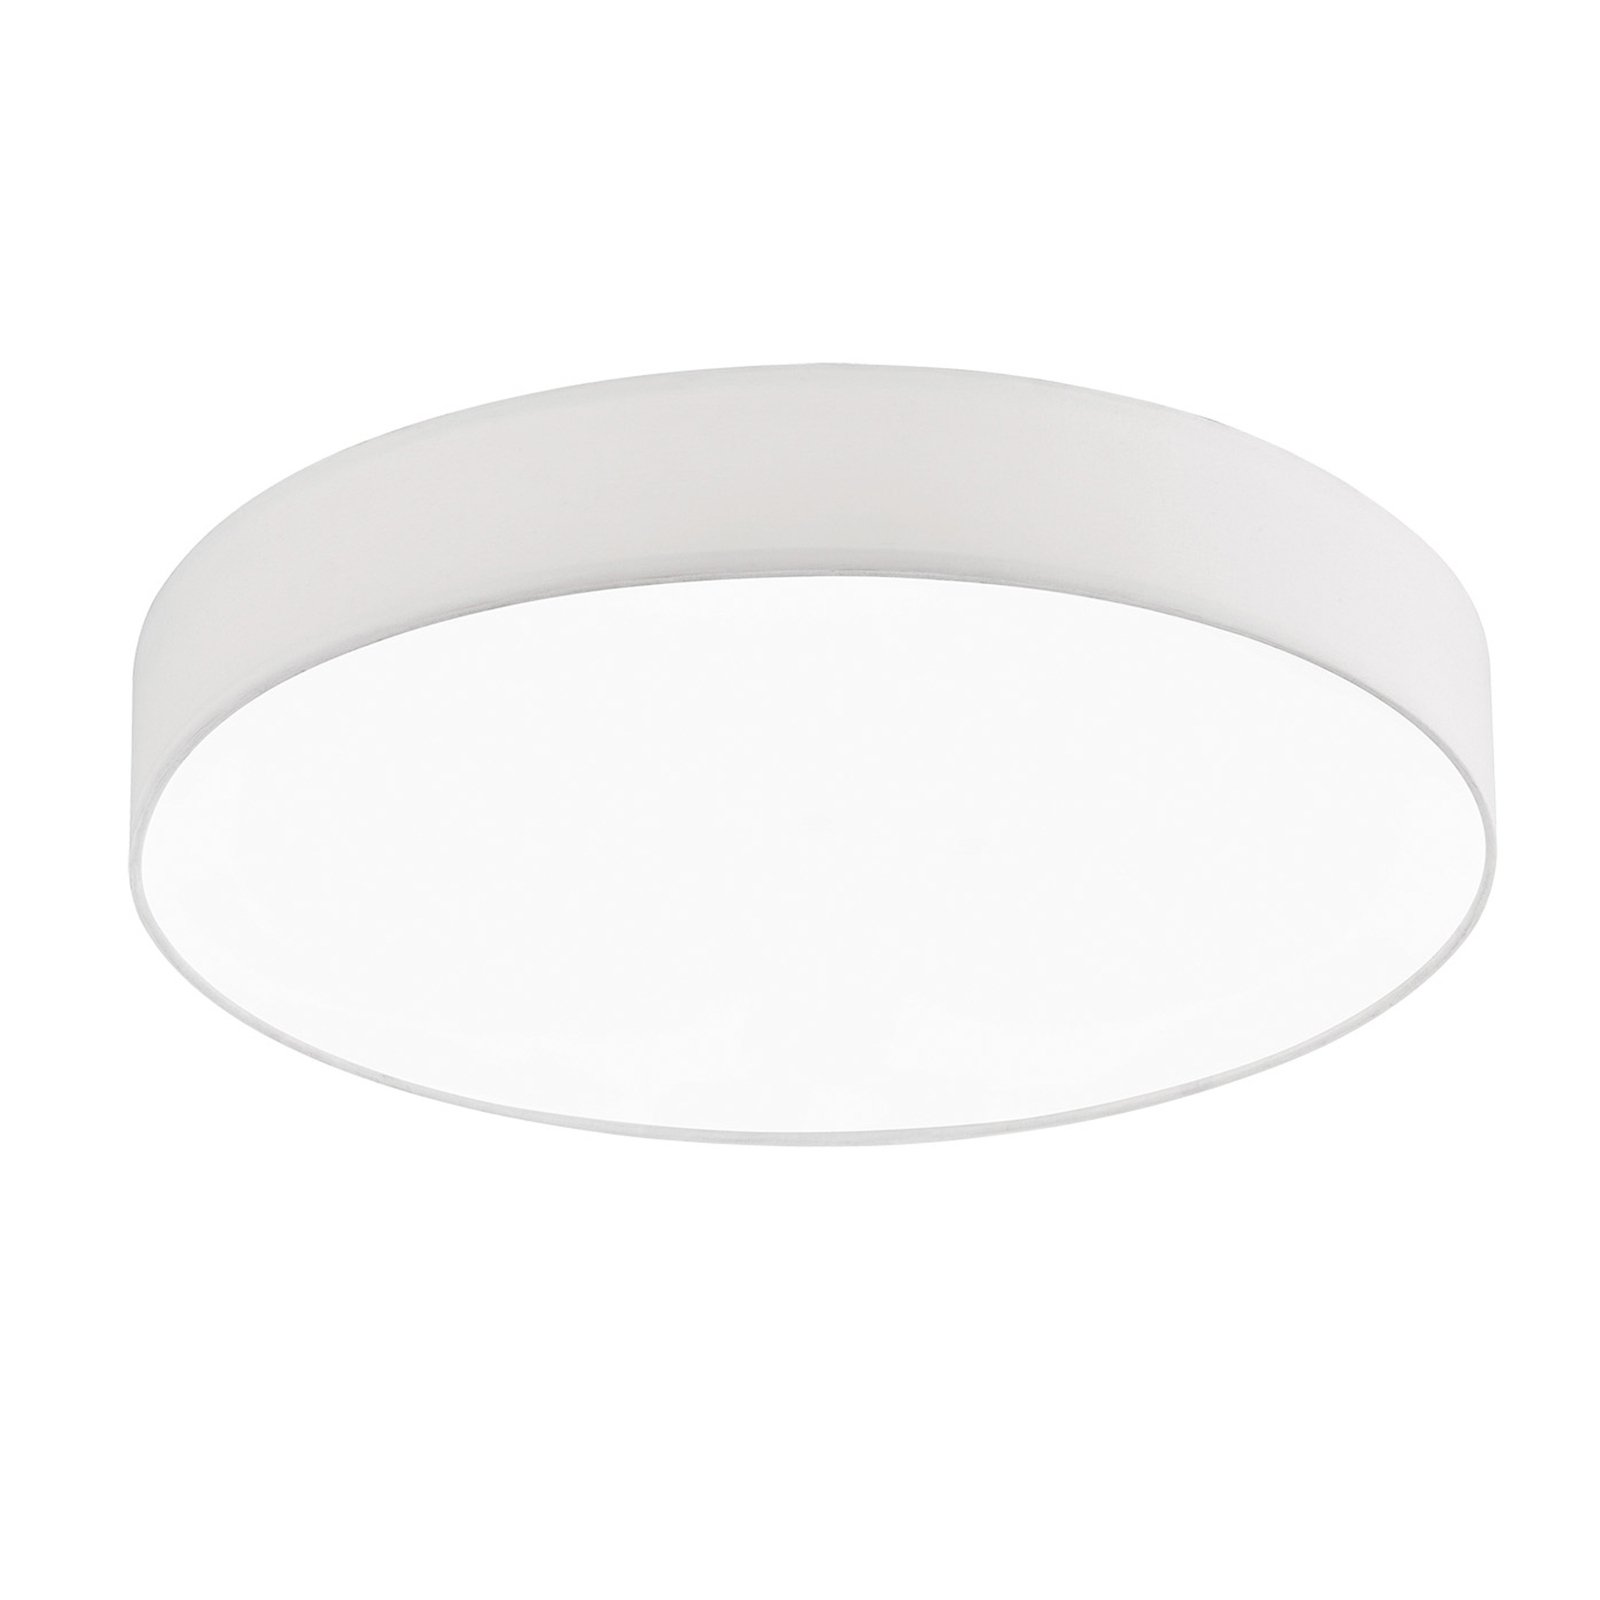 Schöner Wohnen Pina plafonnier LED CCT blanc